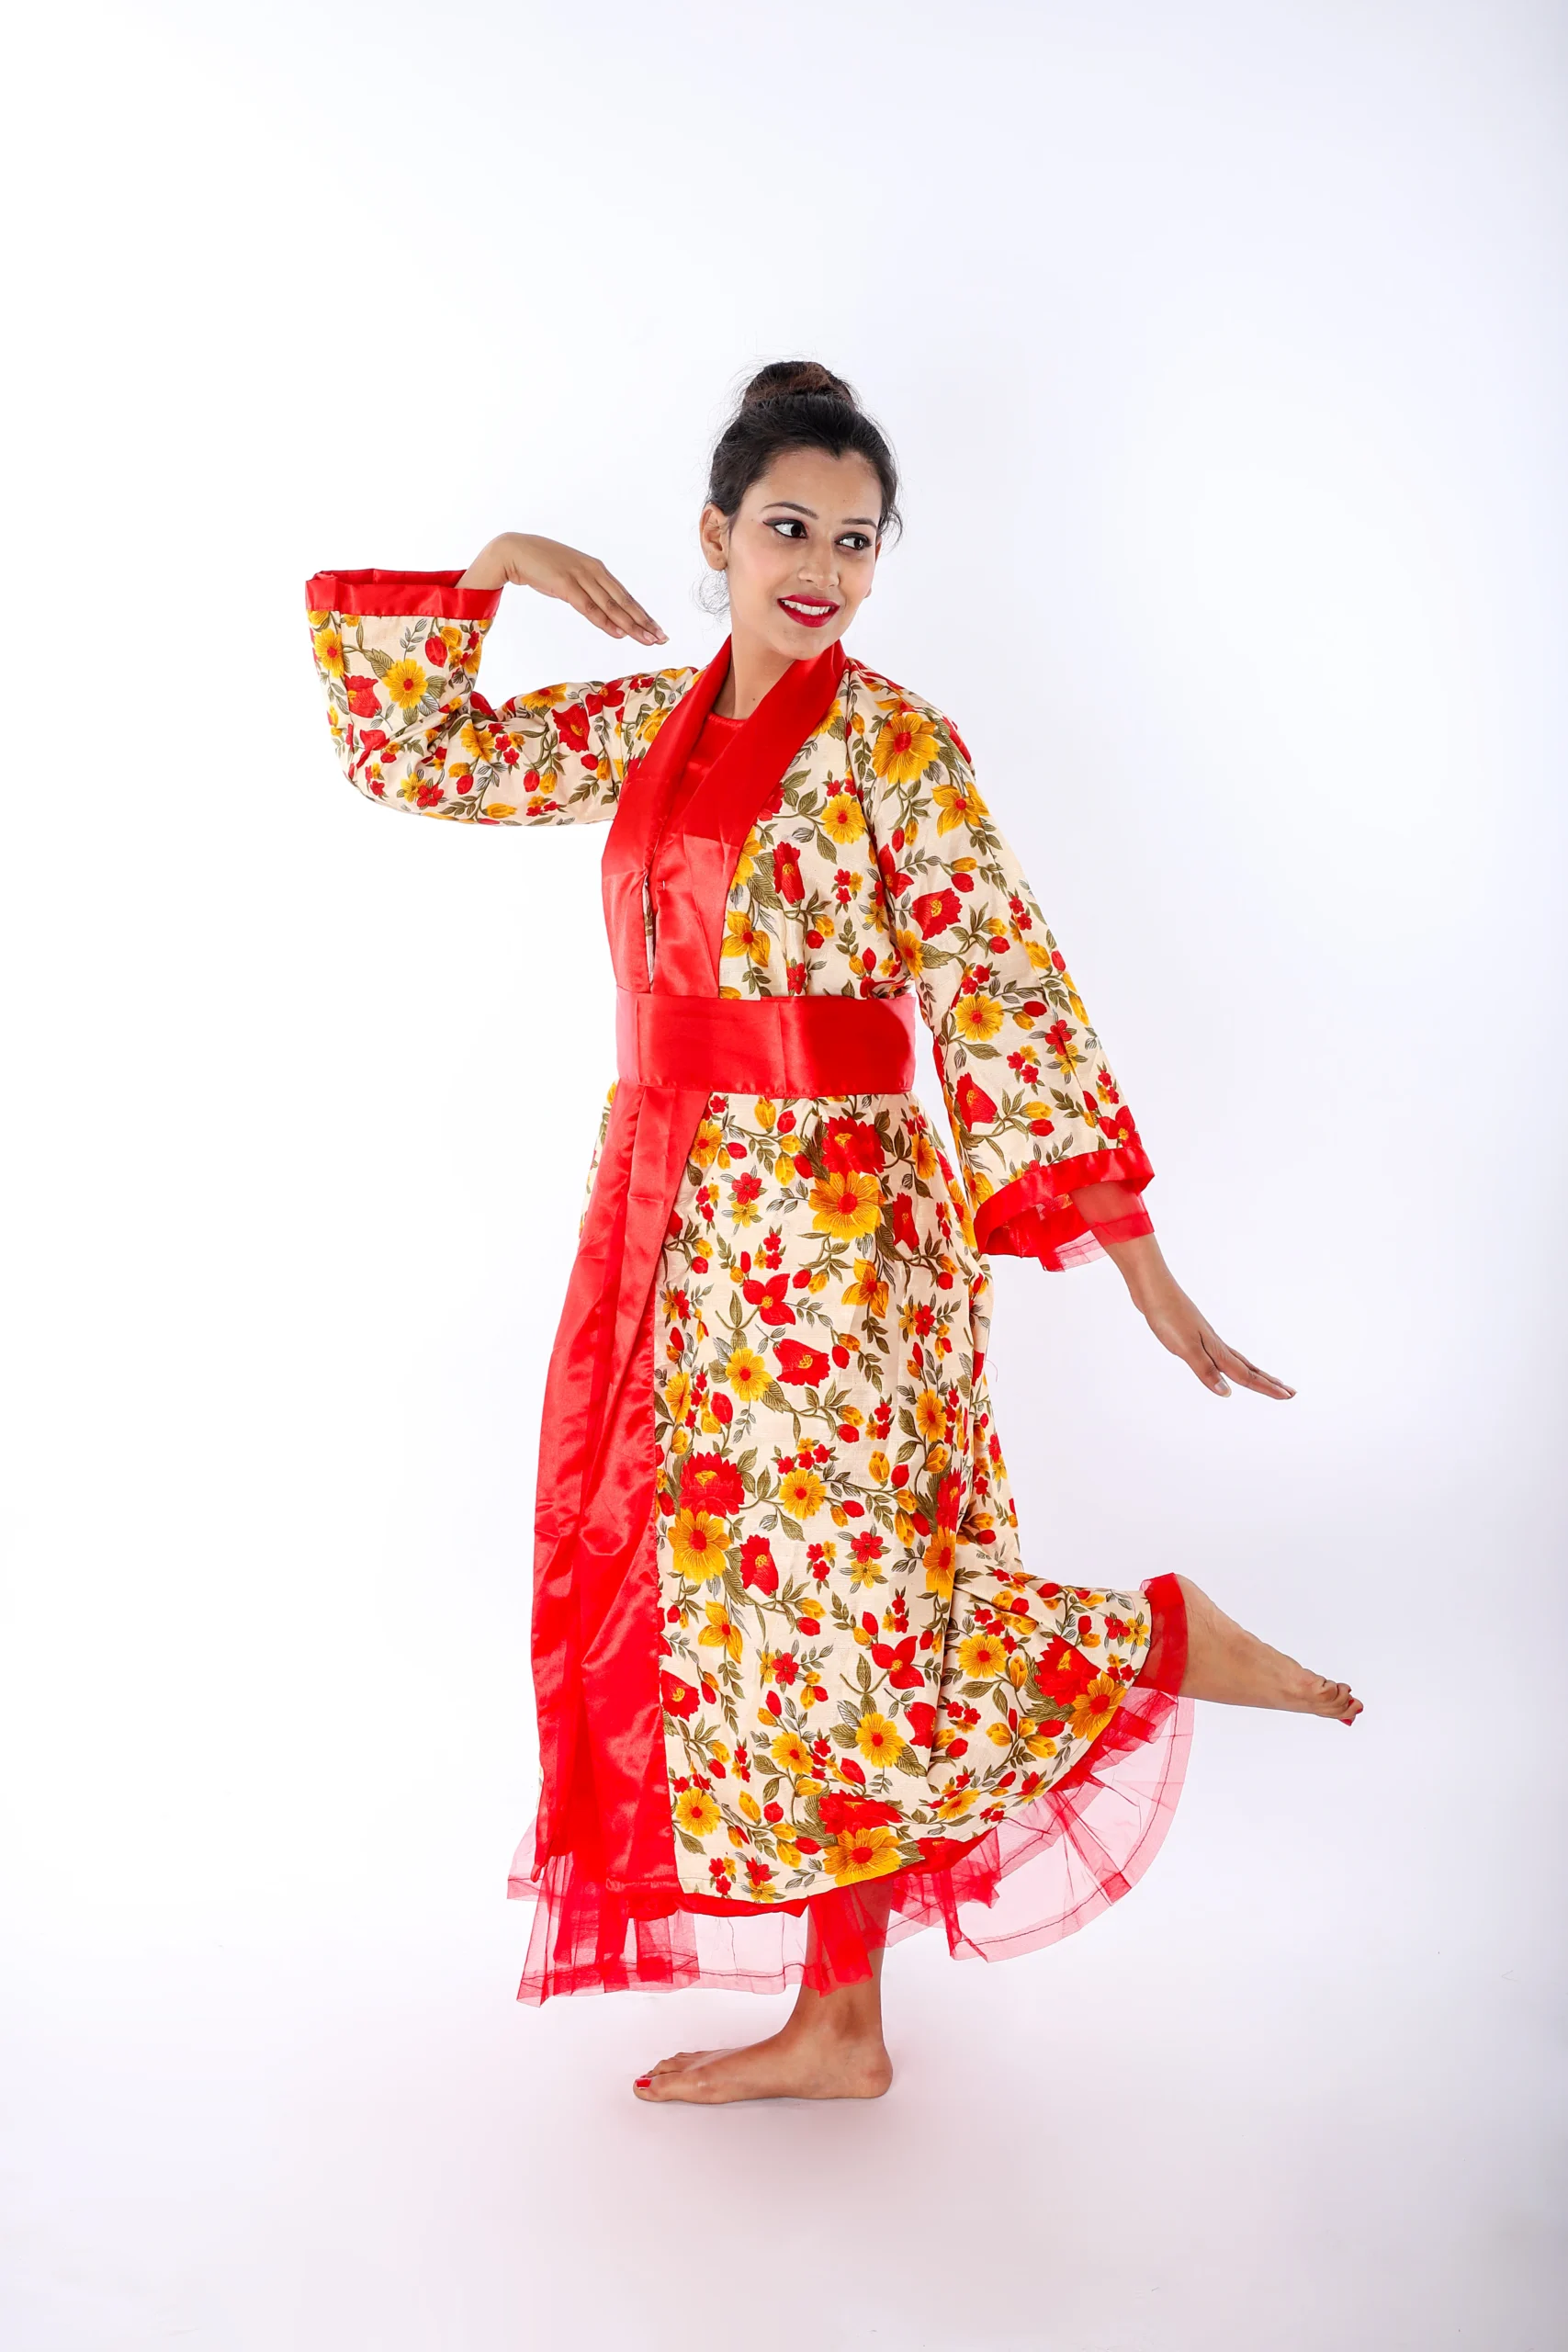 Buy Online Indira Gandhi Fancy Dress Rent & Buy Now - ItsMyCostume